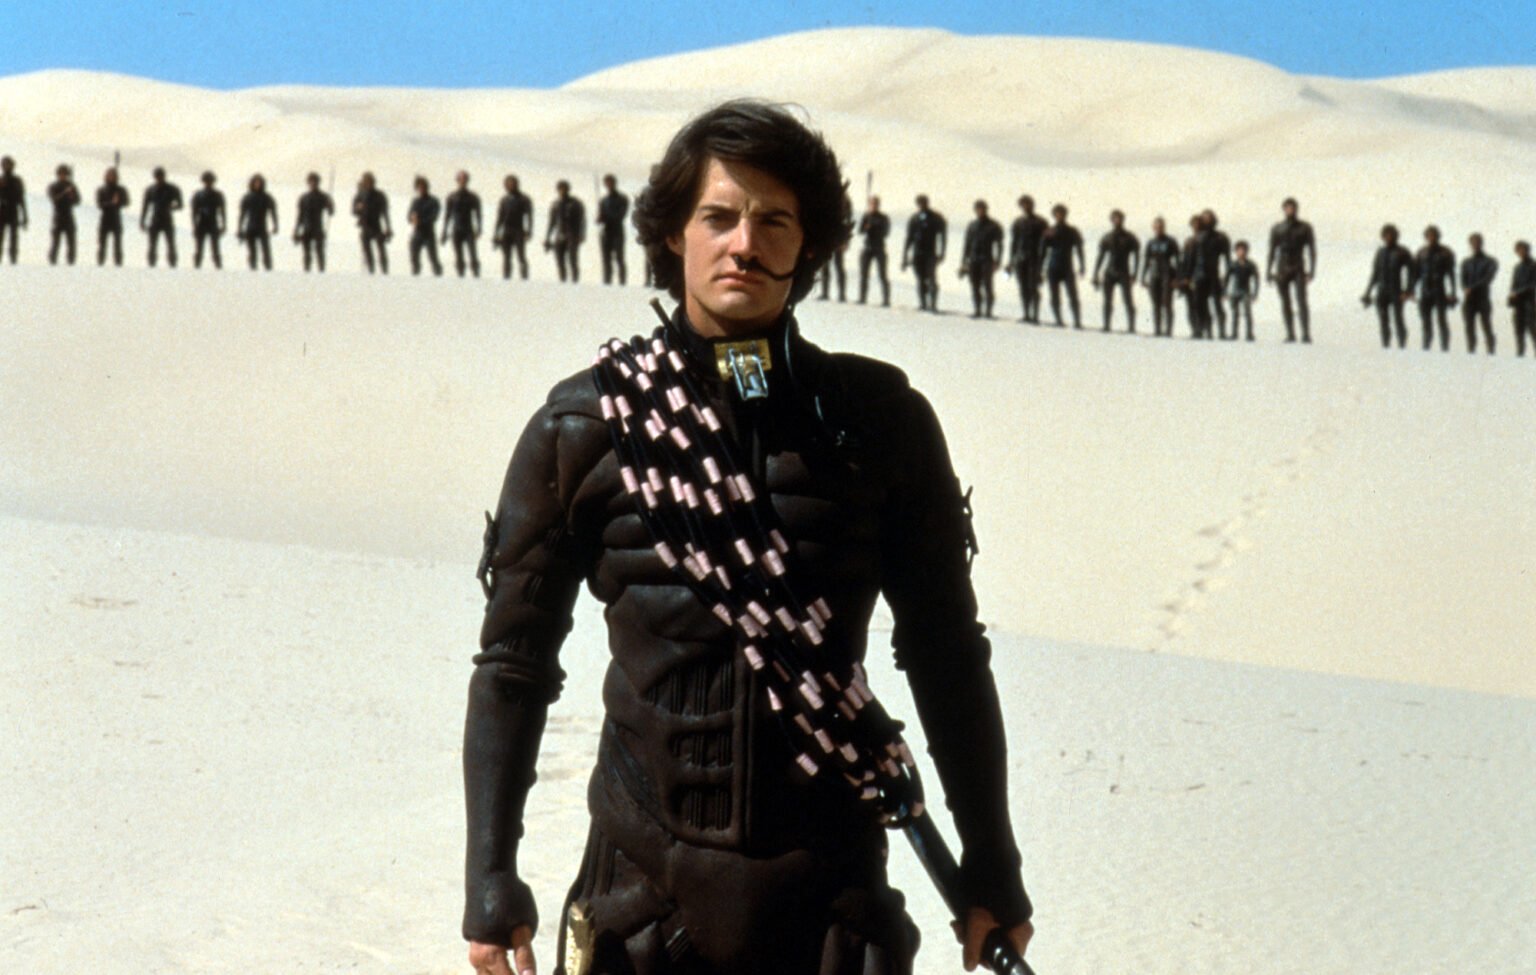 O script perdido de ‘Dune 2’ de David Lynch foi encontrado – aqui está o que havia nele